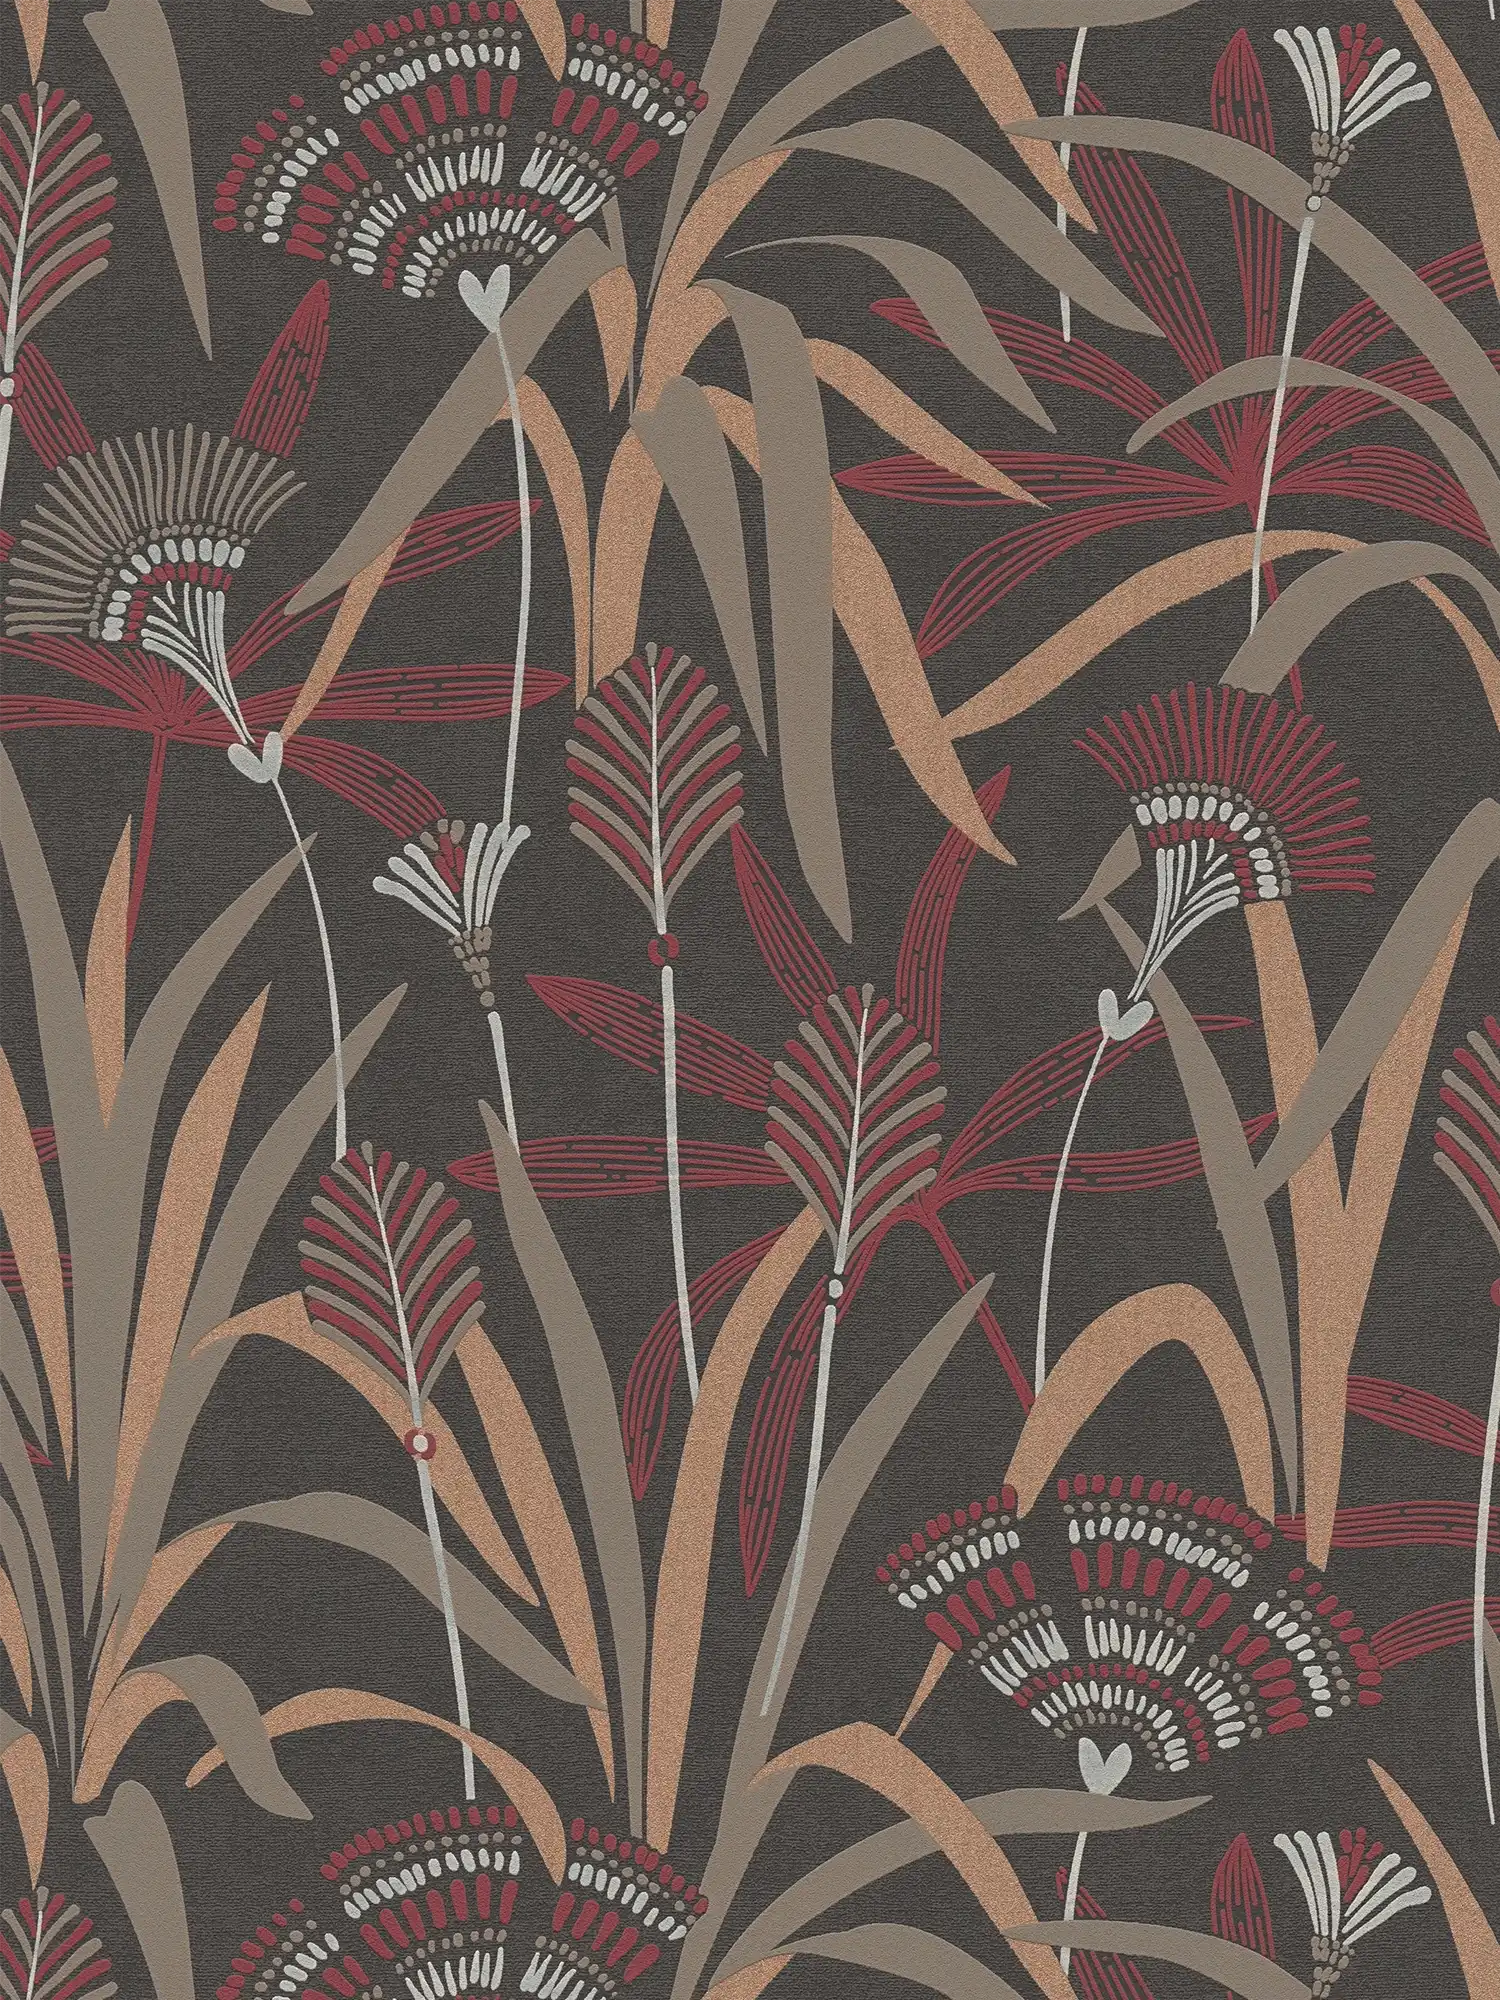         Blumen-Vliestapete im grafischen Design – Metallic, Schwarz, Rot
    